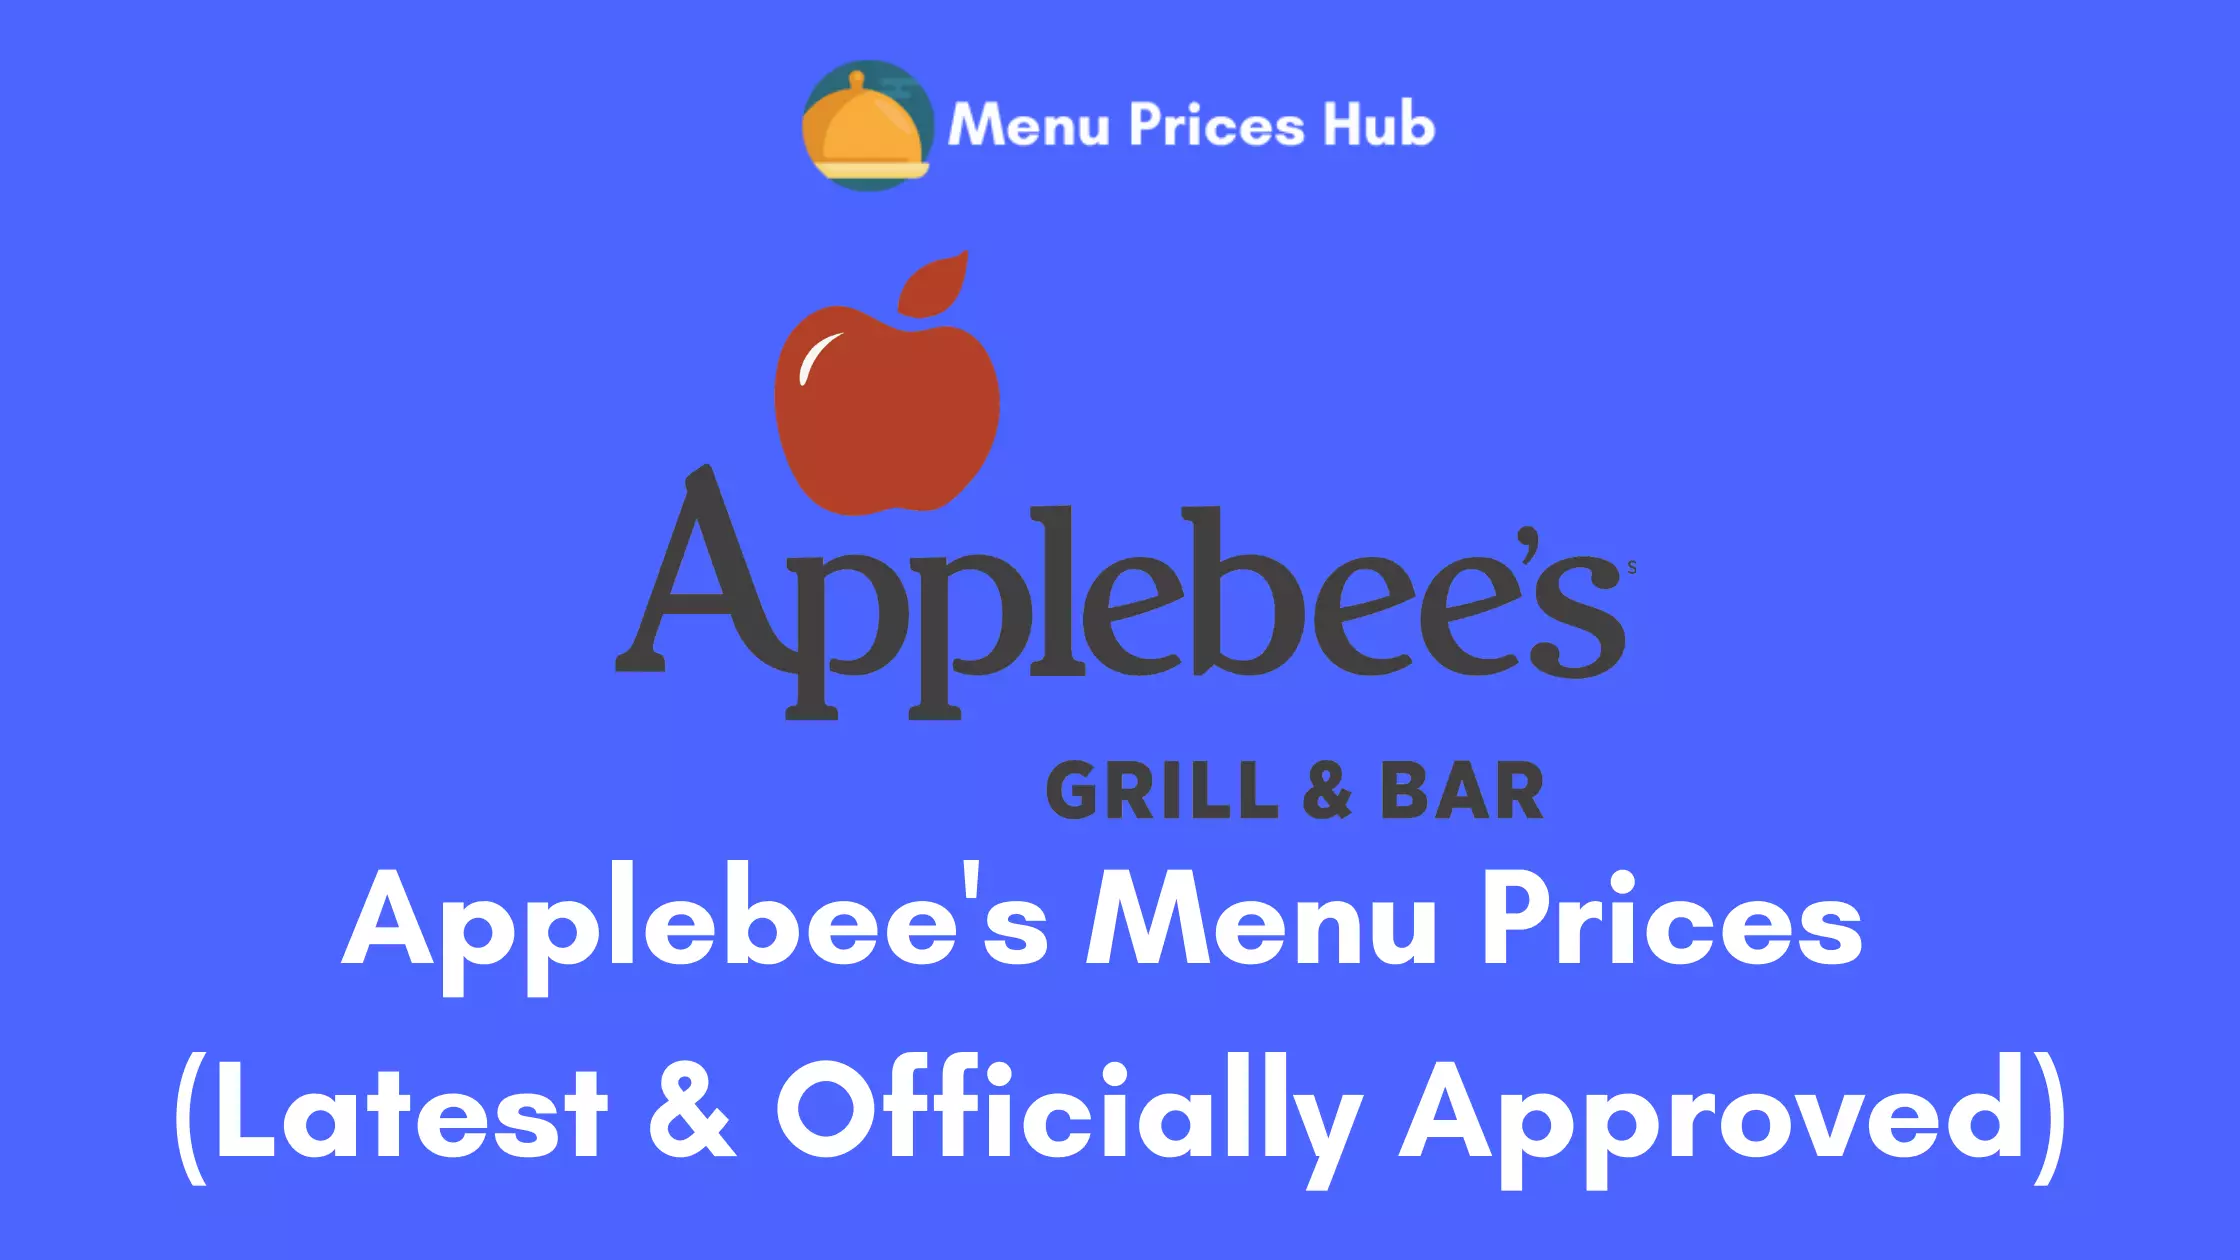 Applebee’s Menu Prices